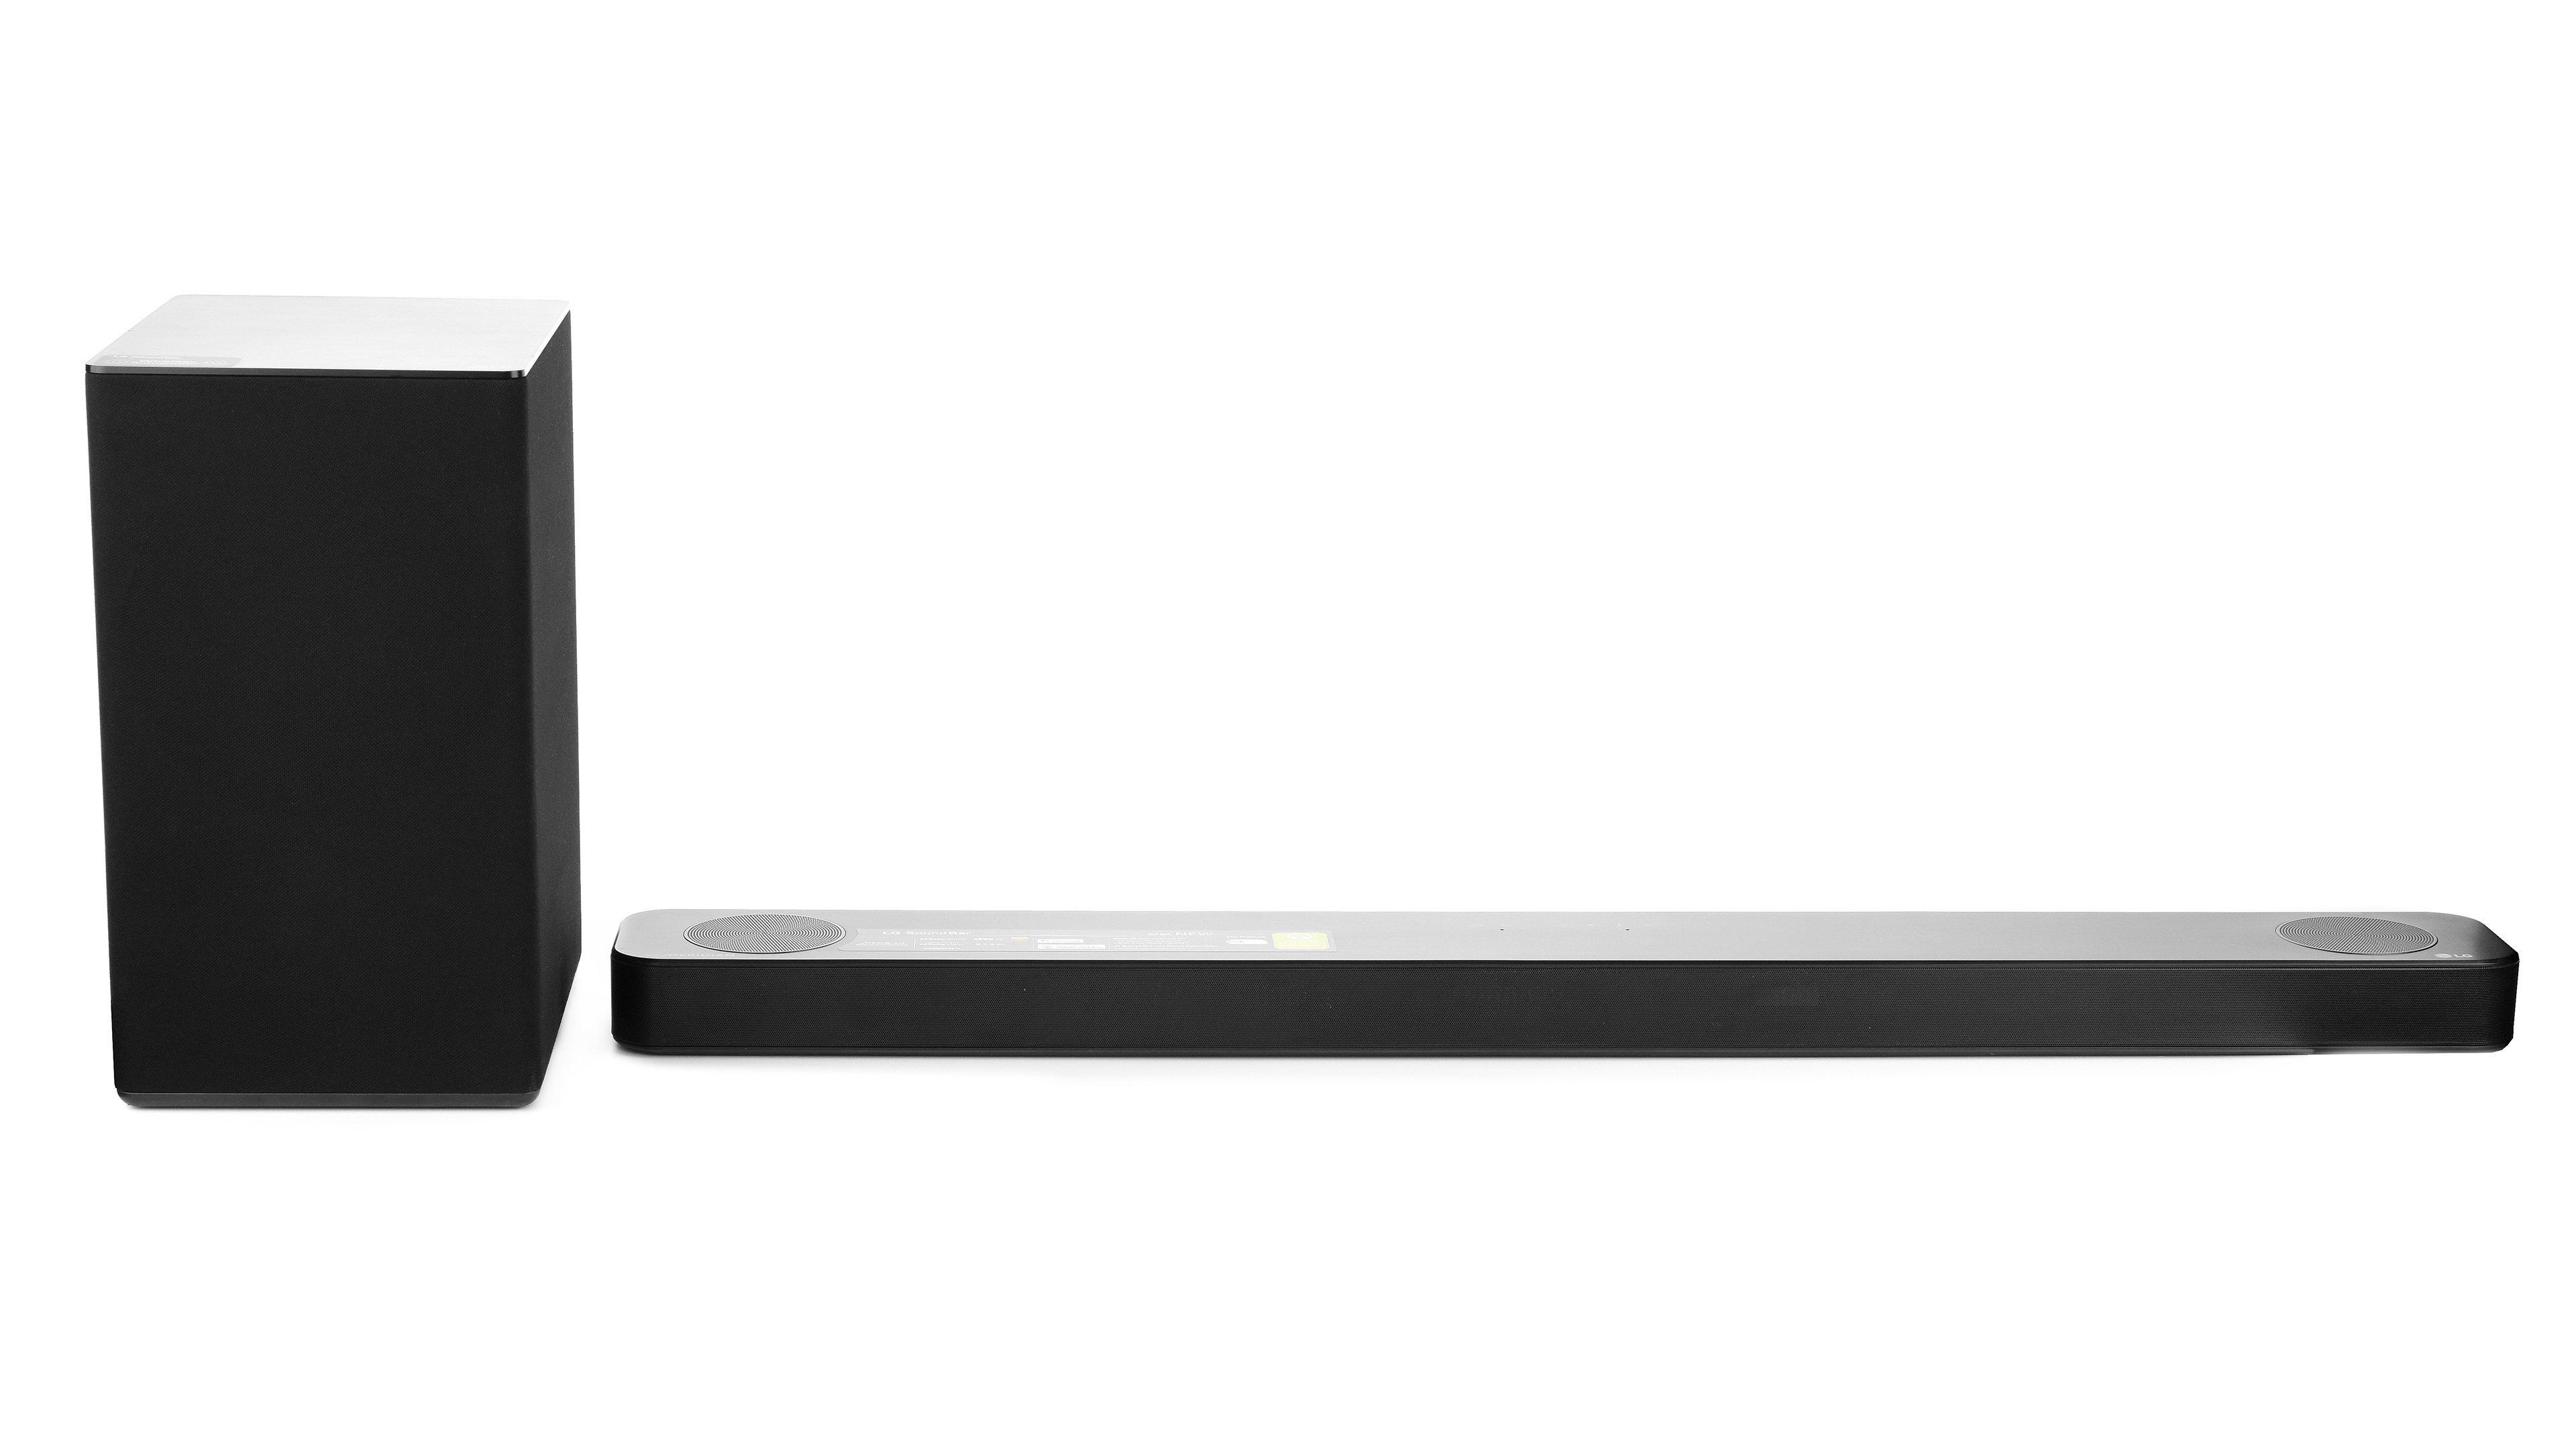 Buy LG,Soundbar, Bluetooth, Wi-Fi, Dolby Vision, 440W, 3.1.2ch, Dark Steel Silver in Saudi Arabia